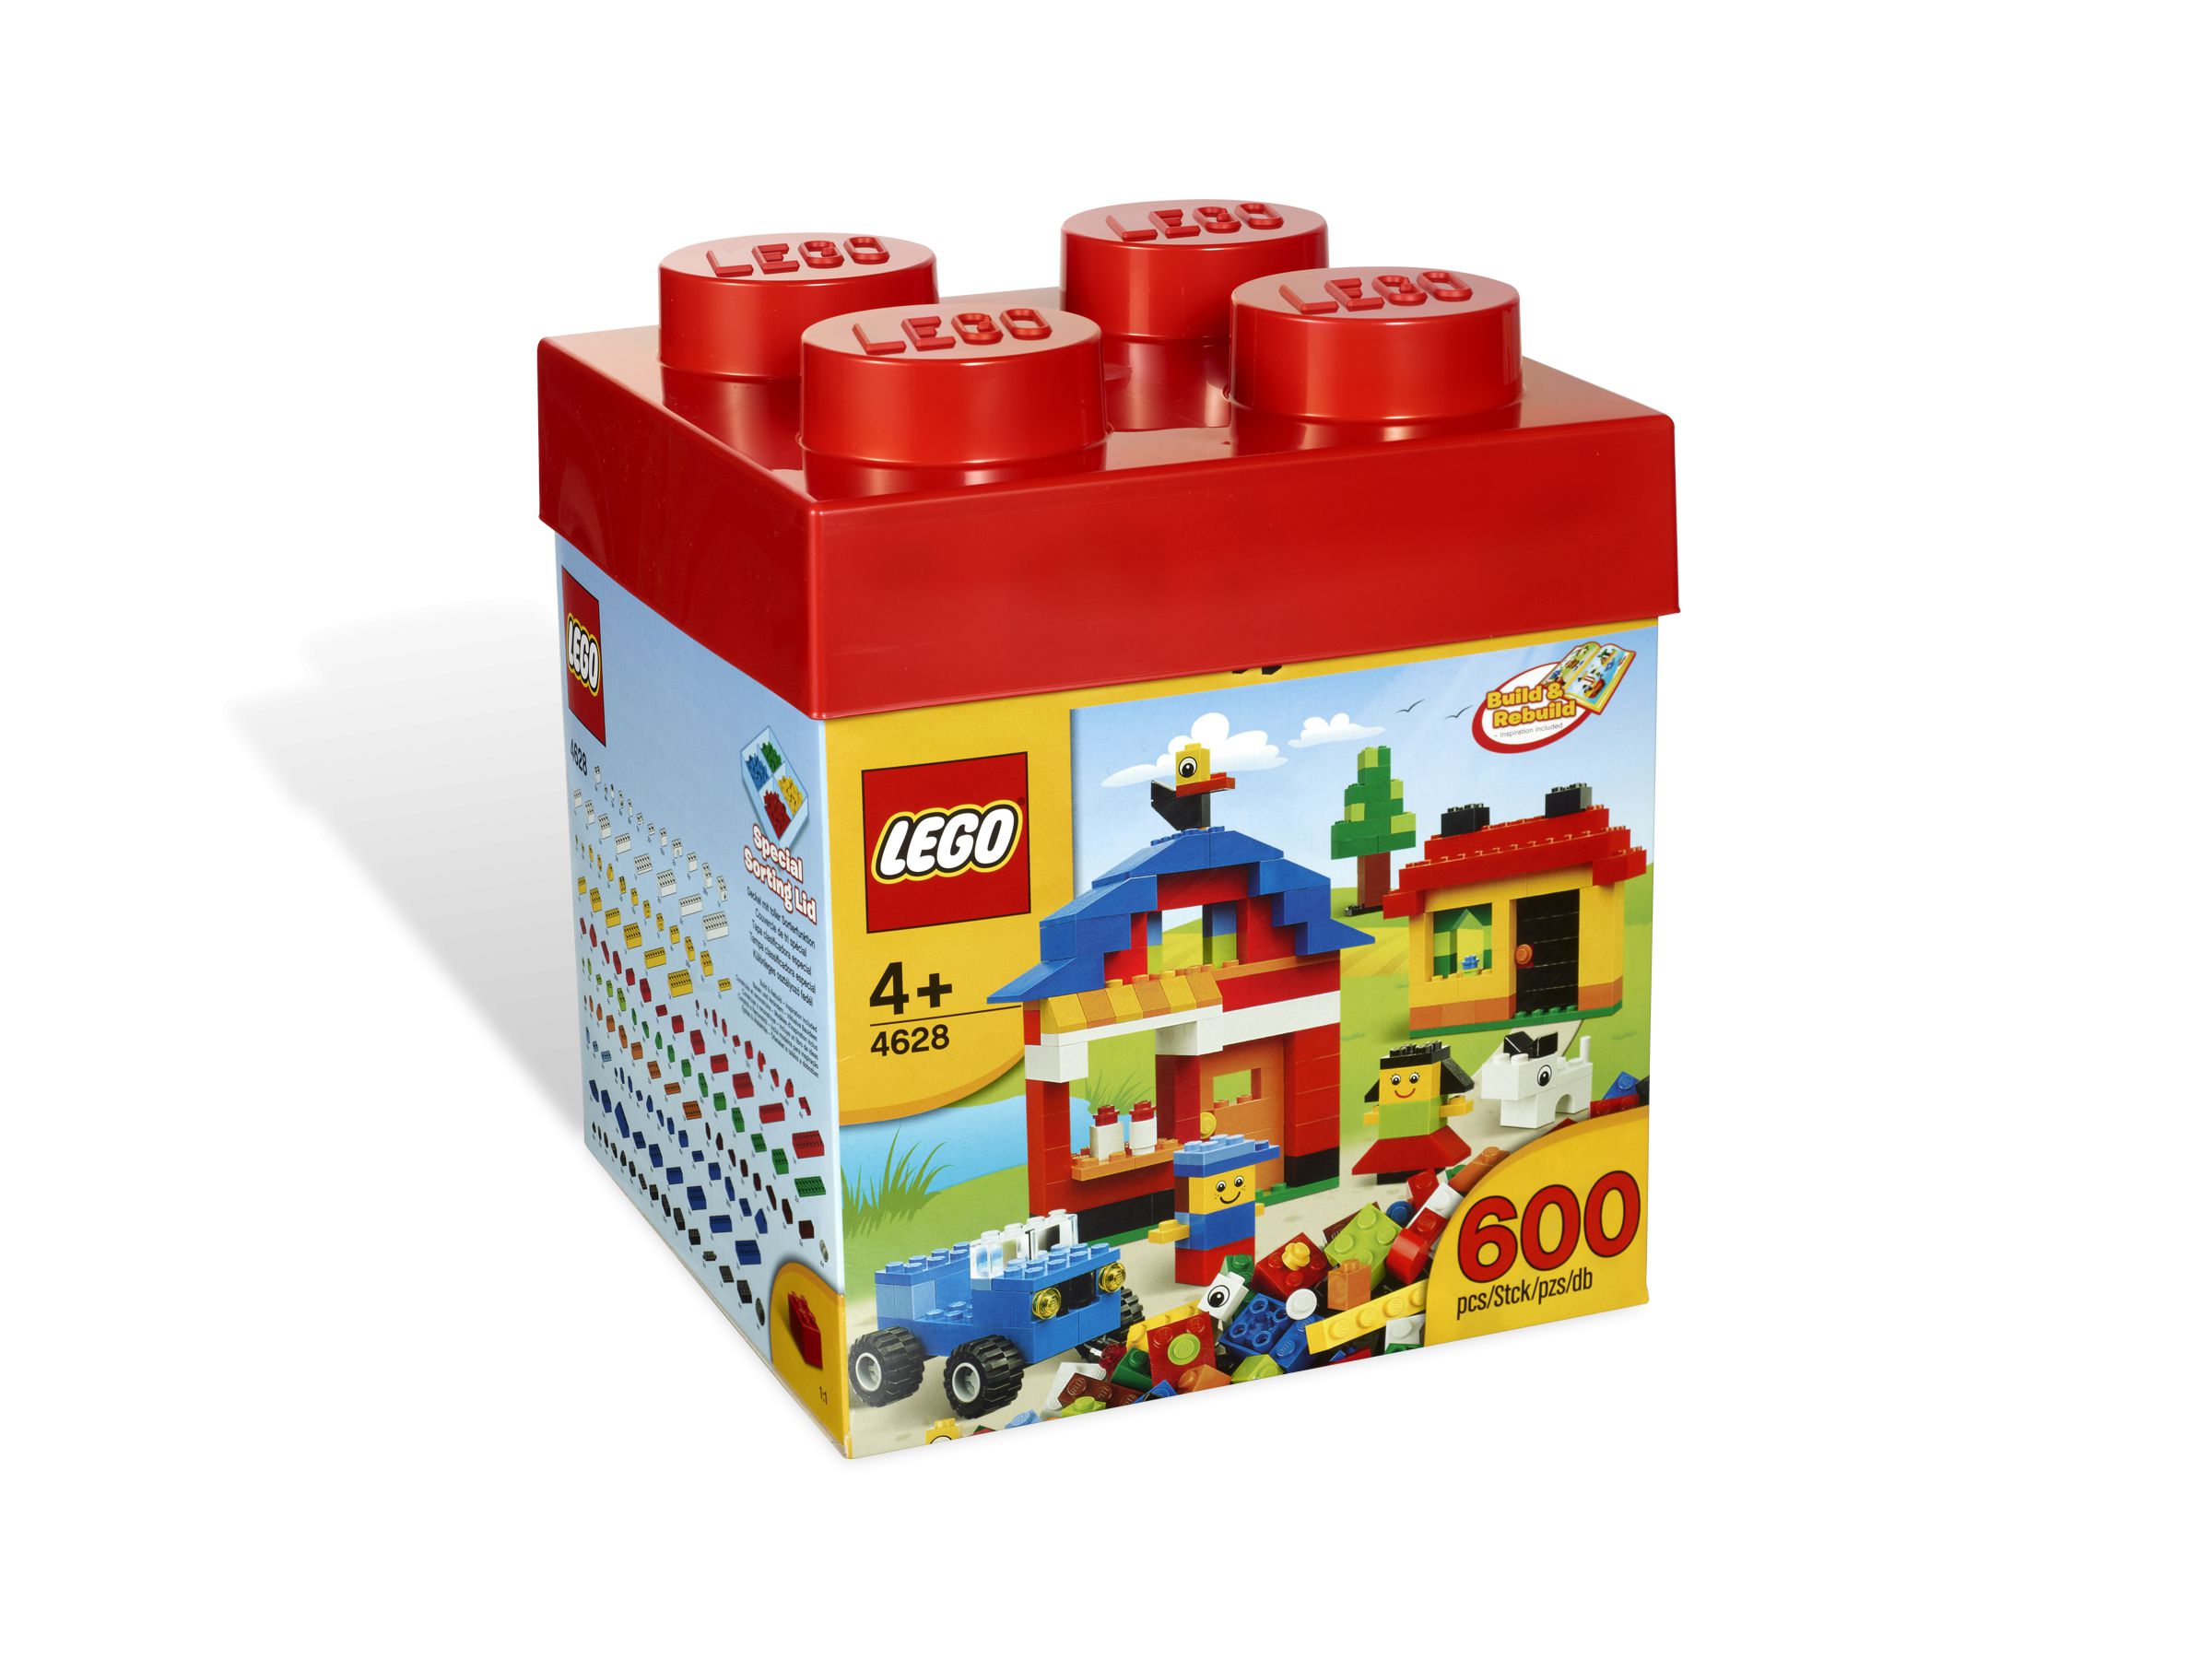 LEGO Bricks and More 4628 Bauspaß Set LEGO_4628_alt1.jpg